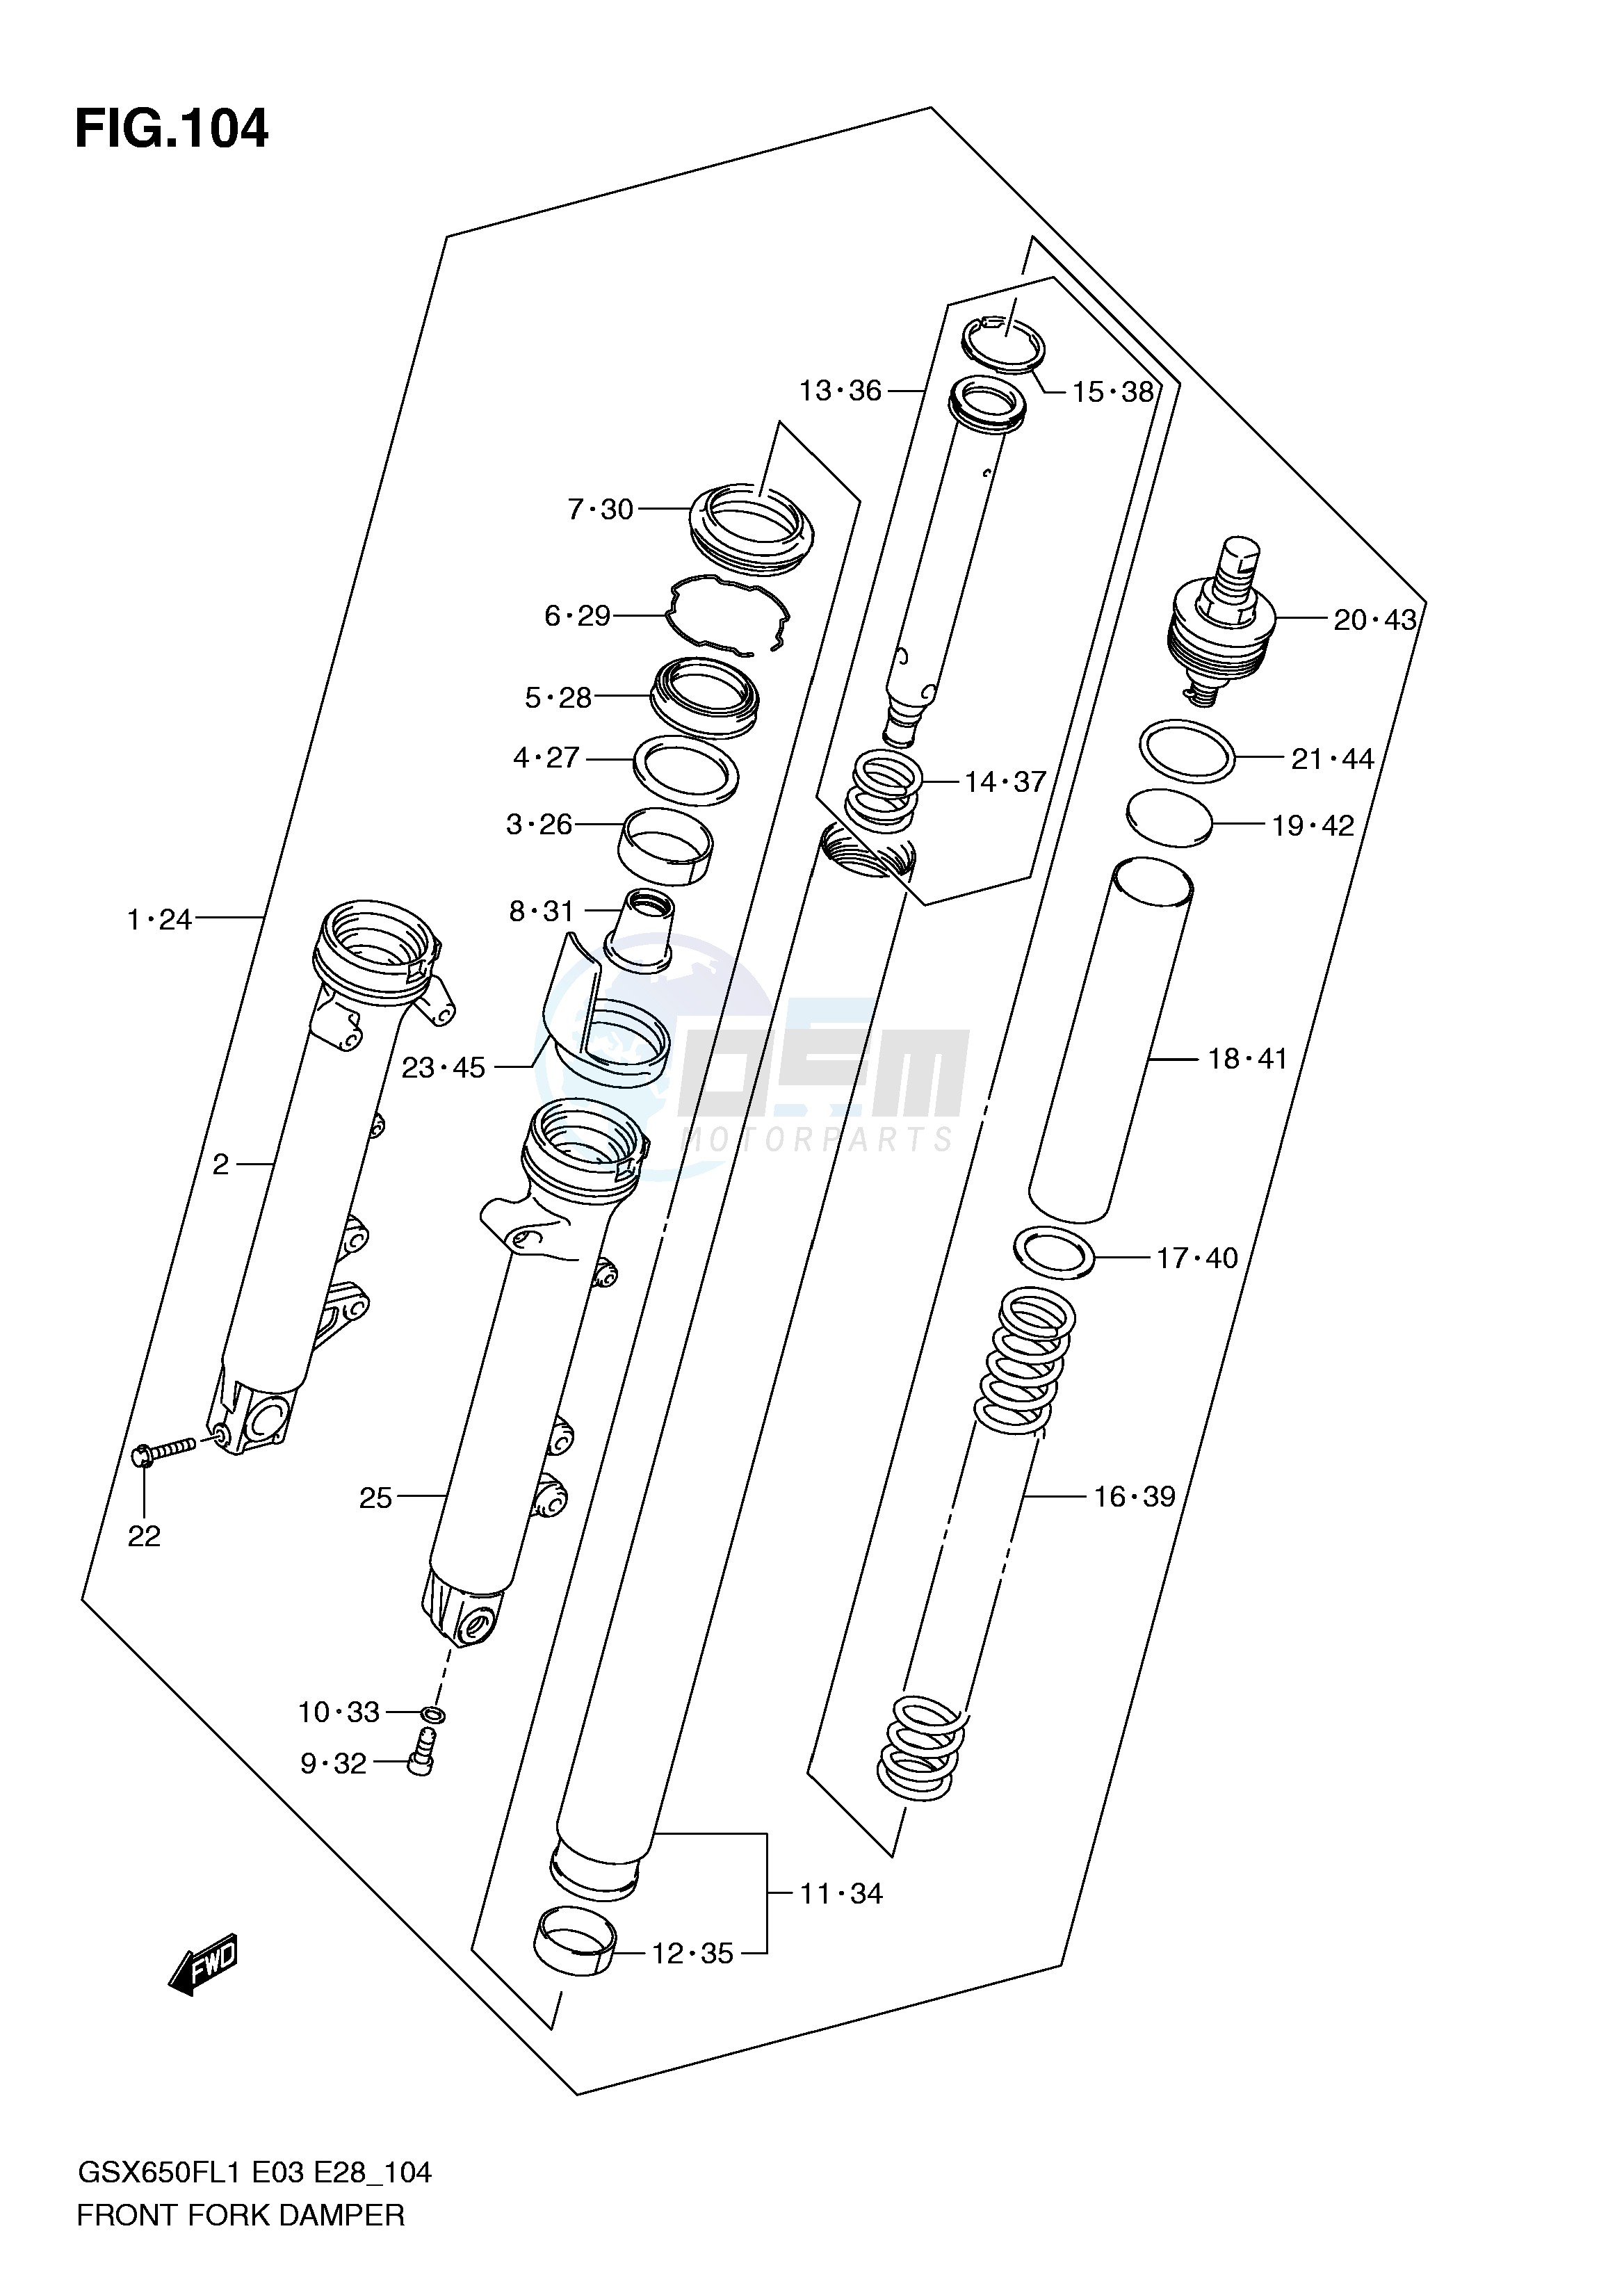 FRONT FORK DAMPER (GSX650FAL1 E33) blueprint